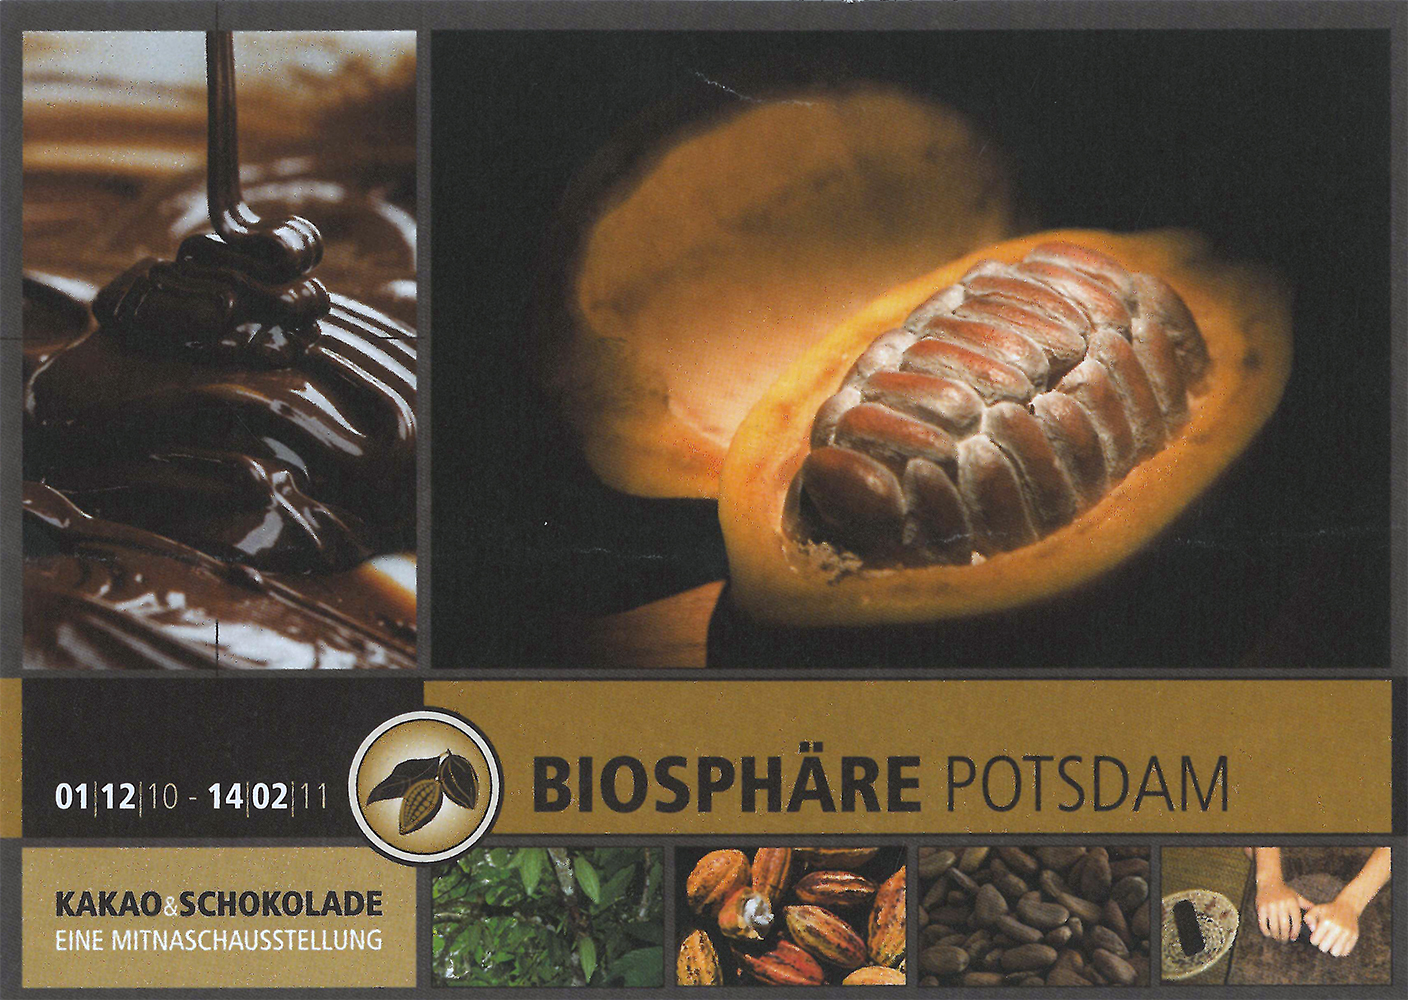 Kakao und Schokolade in der Biosphäre